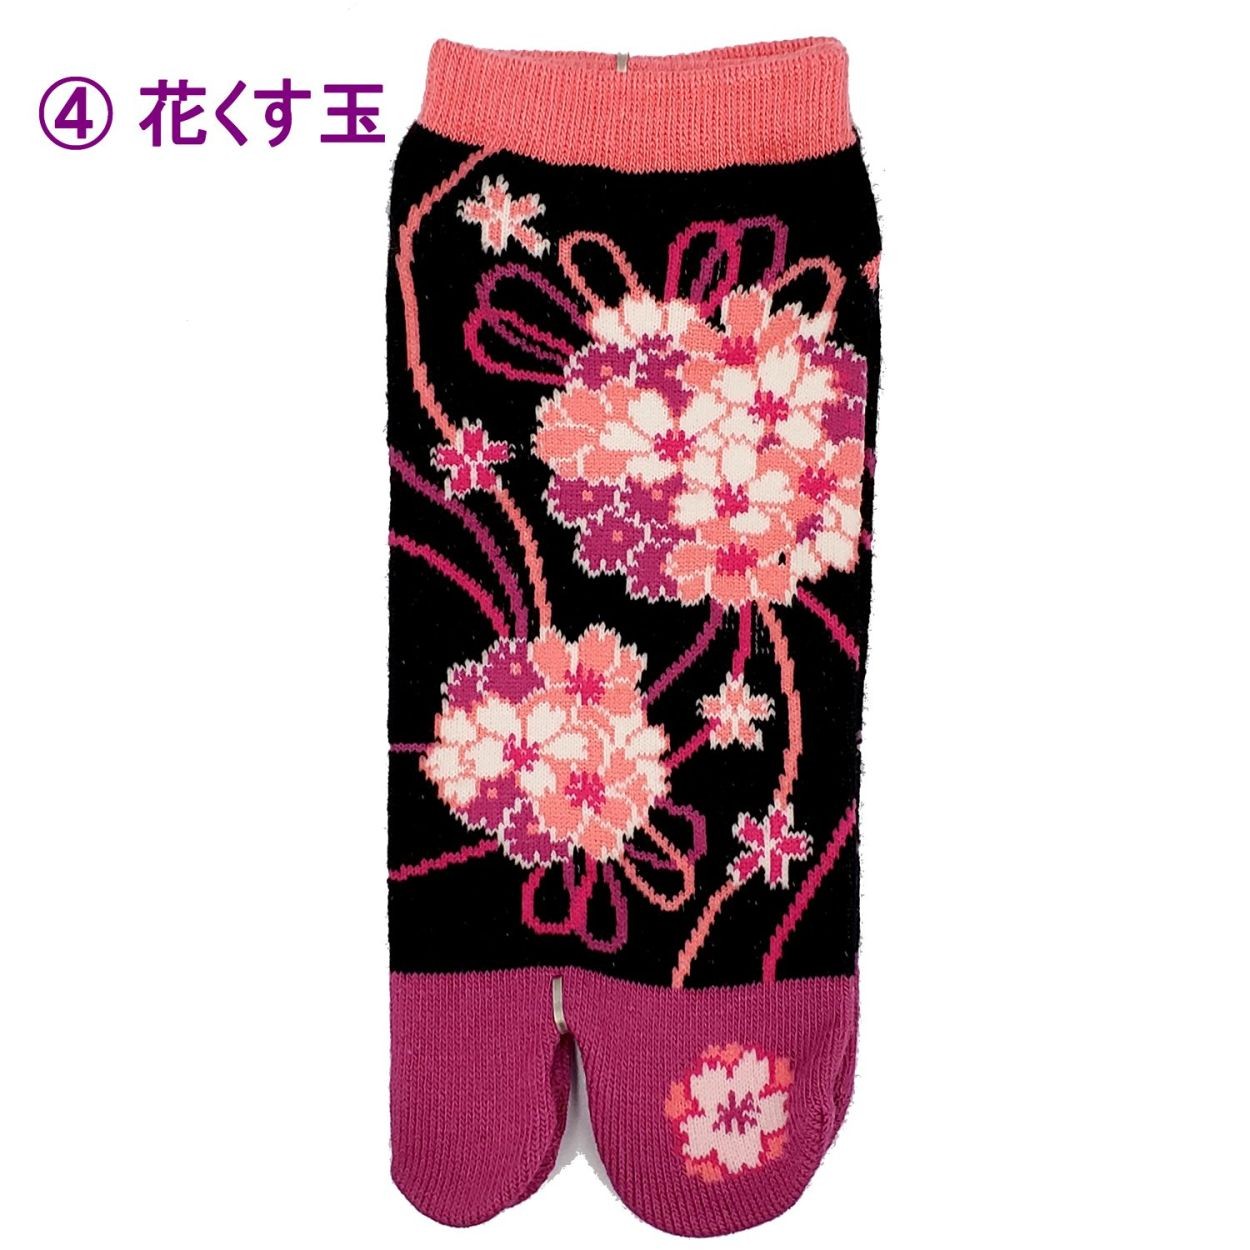 足袋ソックス 和柄 靴下 くつした スニーカー丈 日本製 桜 舞妓 猫 柴犬 メール便送料無料